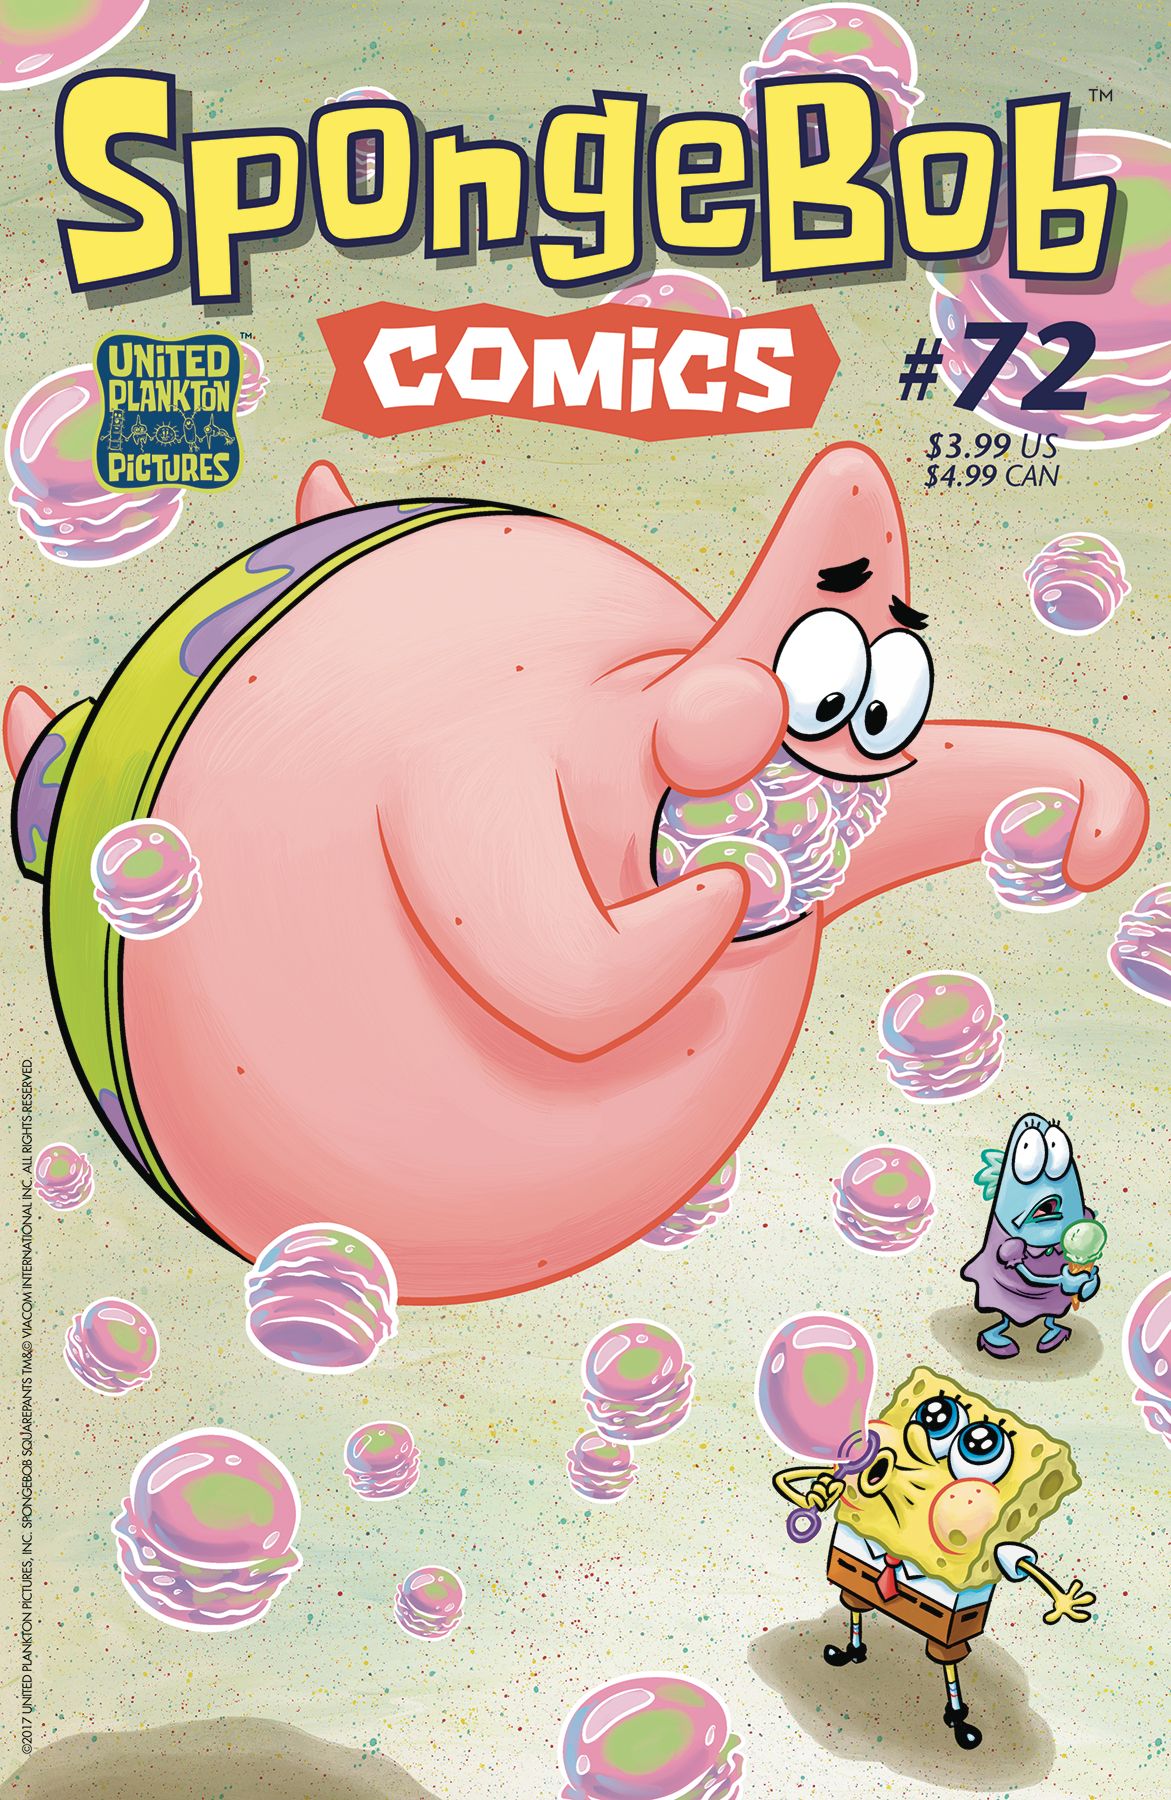 Spongebob Comics #72 Comic